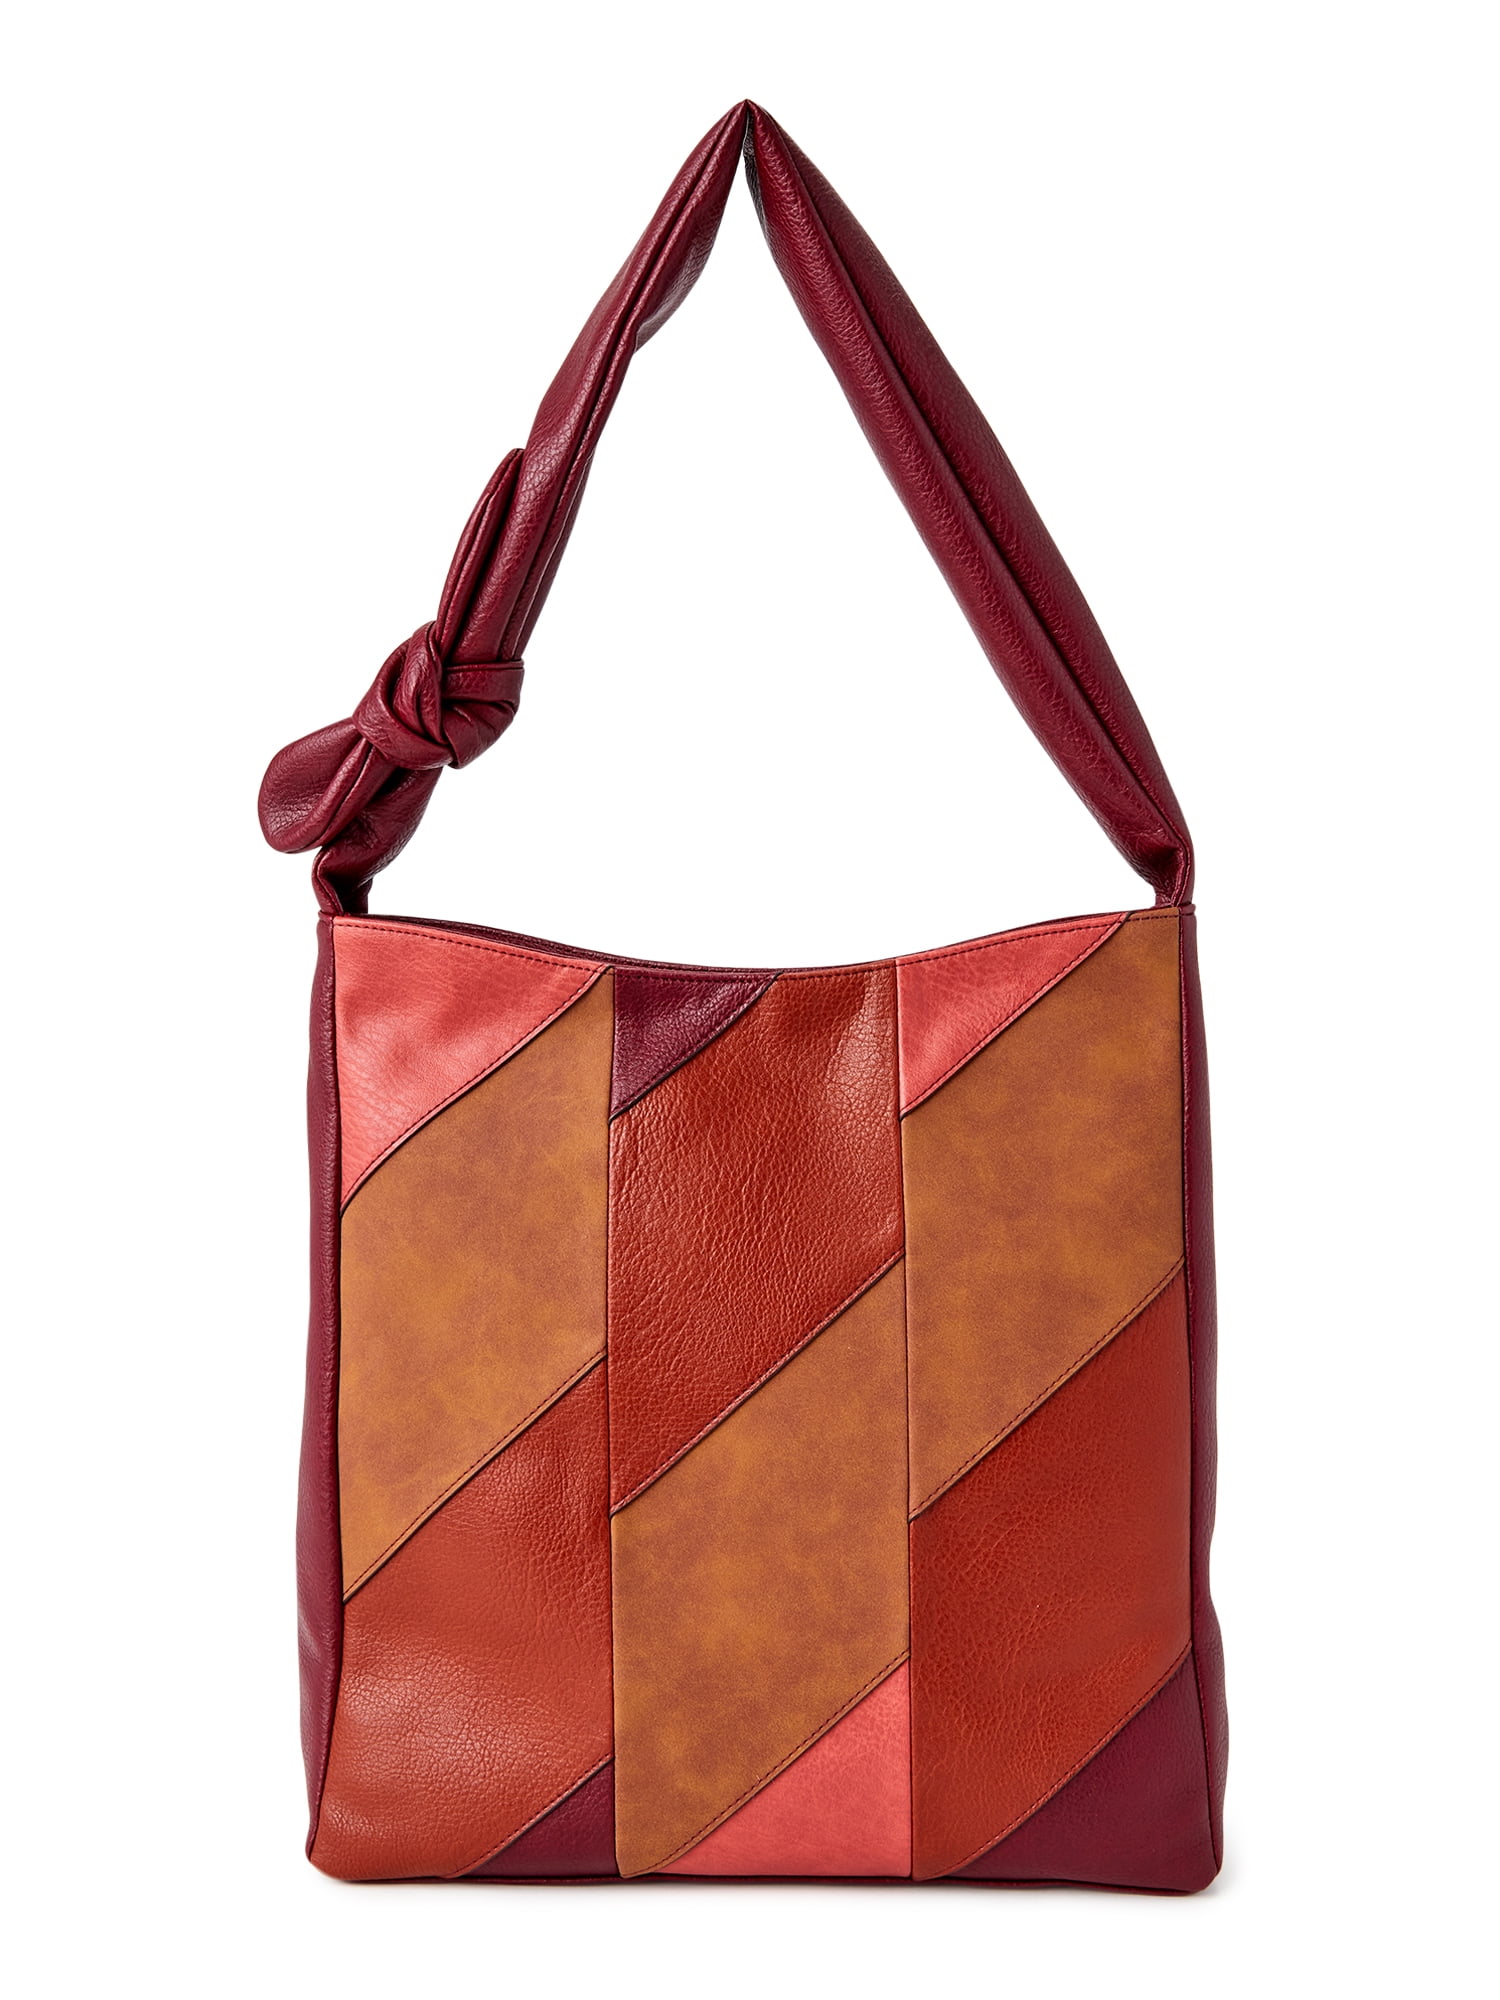 Handbag For Women Large Genuine Leather Stripe Hobo Bags Patchwork Shoulder Tote